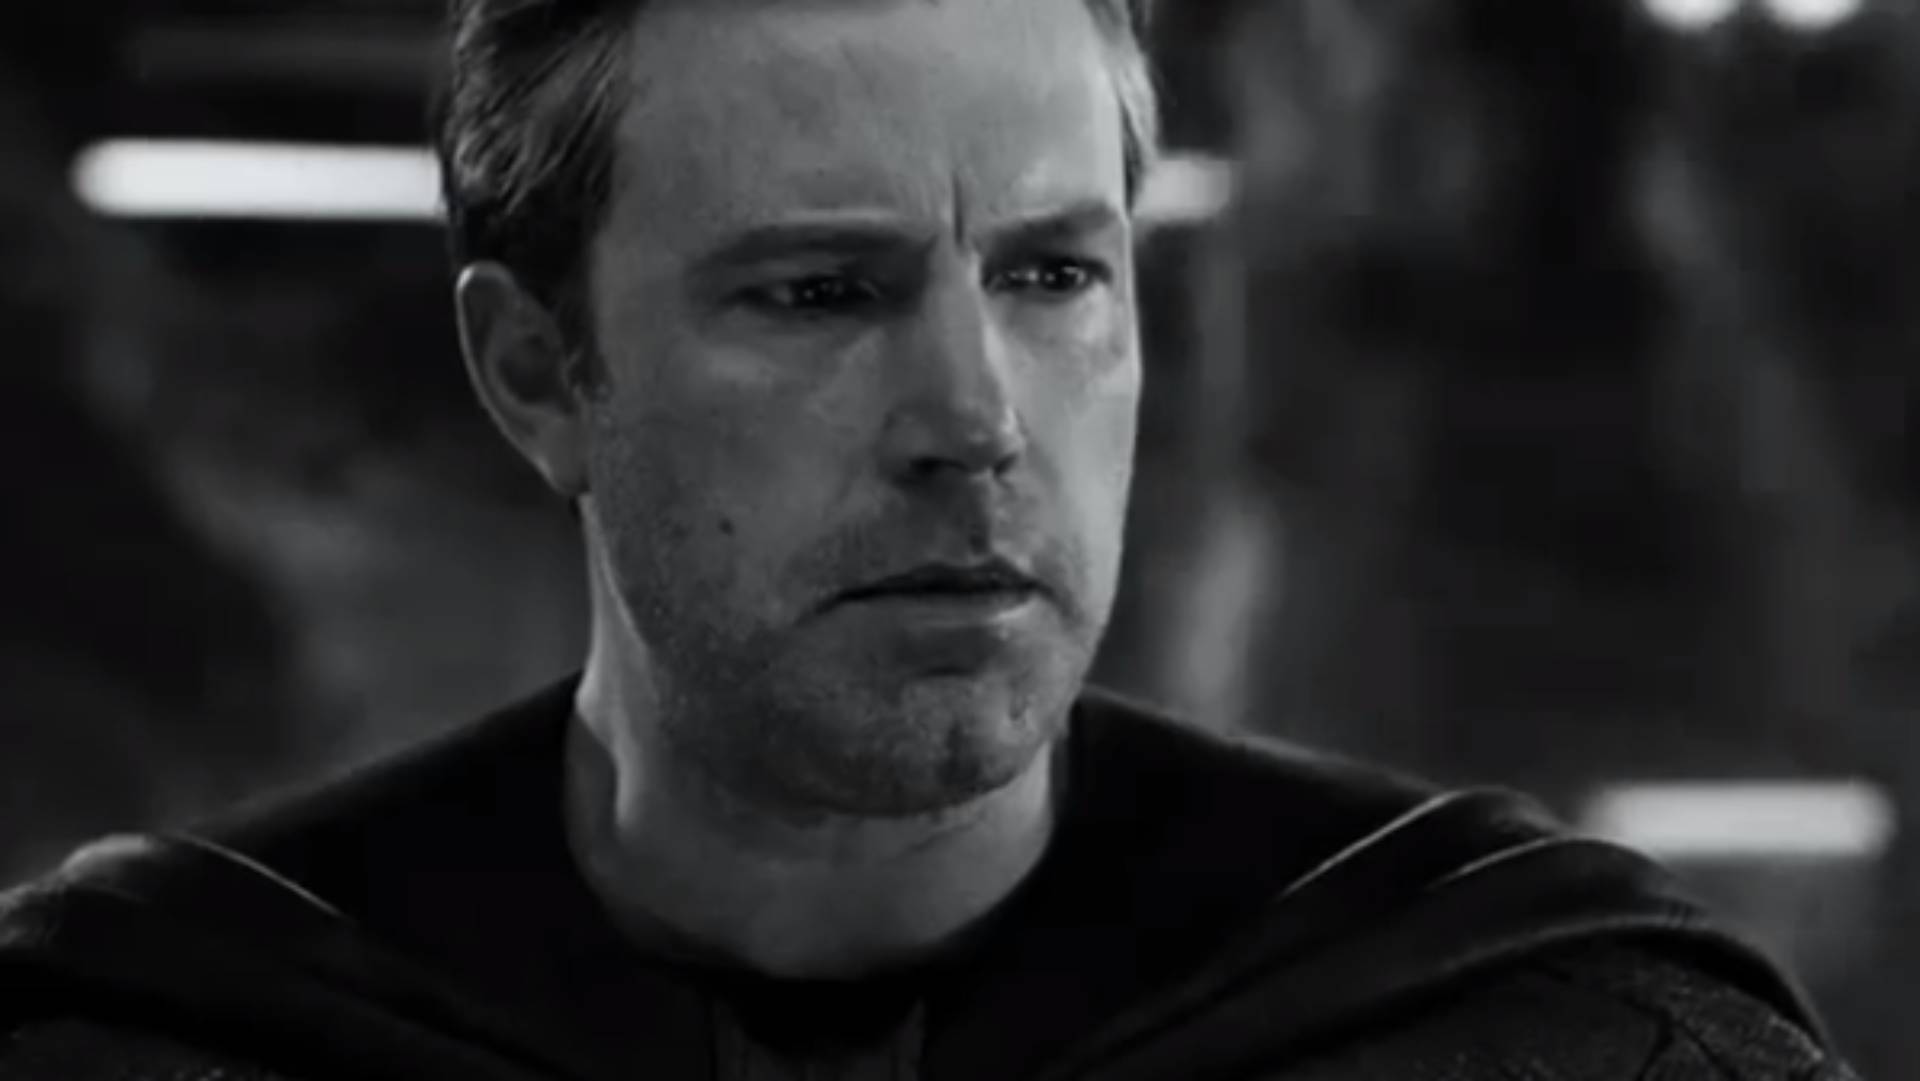 Em preto e branco, o novo trailer de ‘Liga da Justiça’ traz cenas inéditas